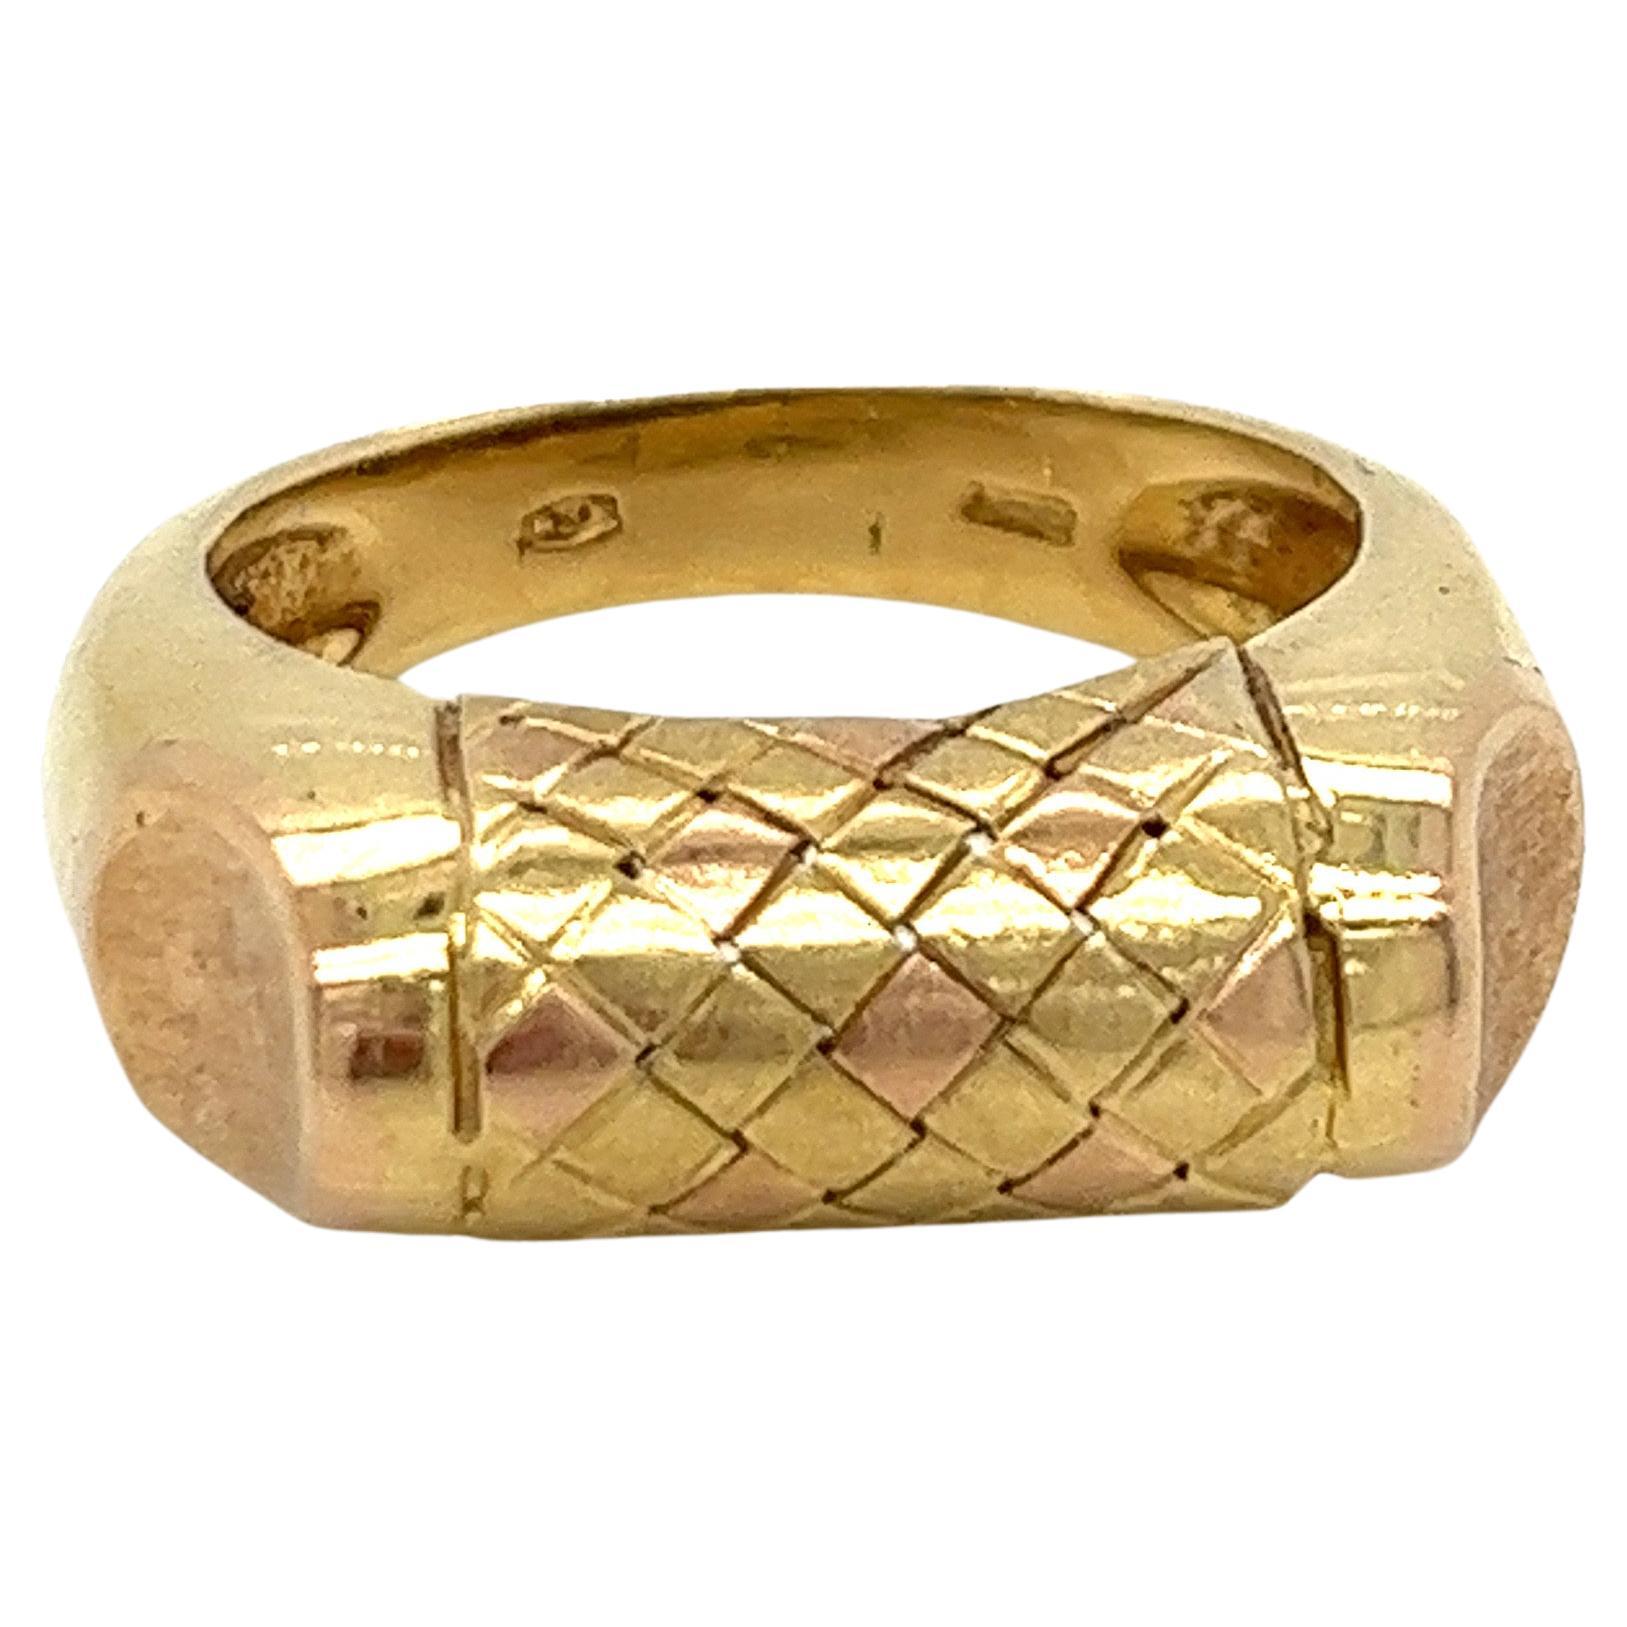 Vintage 1980's 18k Yellow Gold and Rose Gold Statement Ring. Le motif central présente un tressage de panier d'or rose et d'or jaune à la finition brossée. Les accents latéraux sont en or rose brossé et le reste de l'anneau est en or jaune brillant.